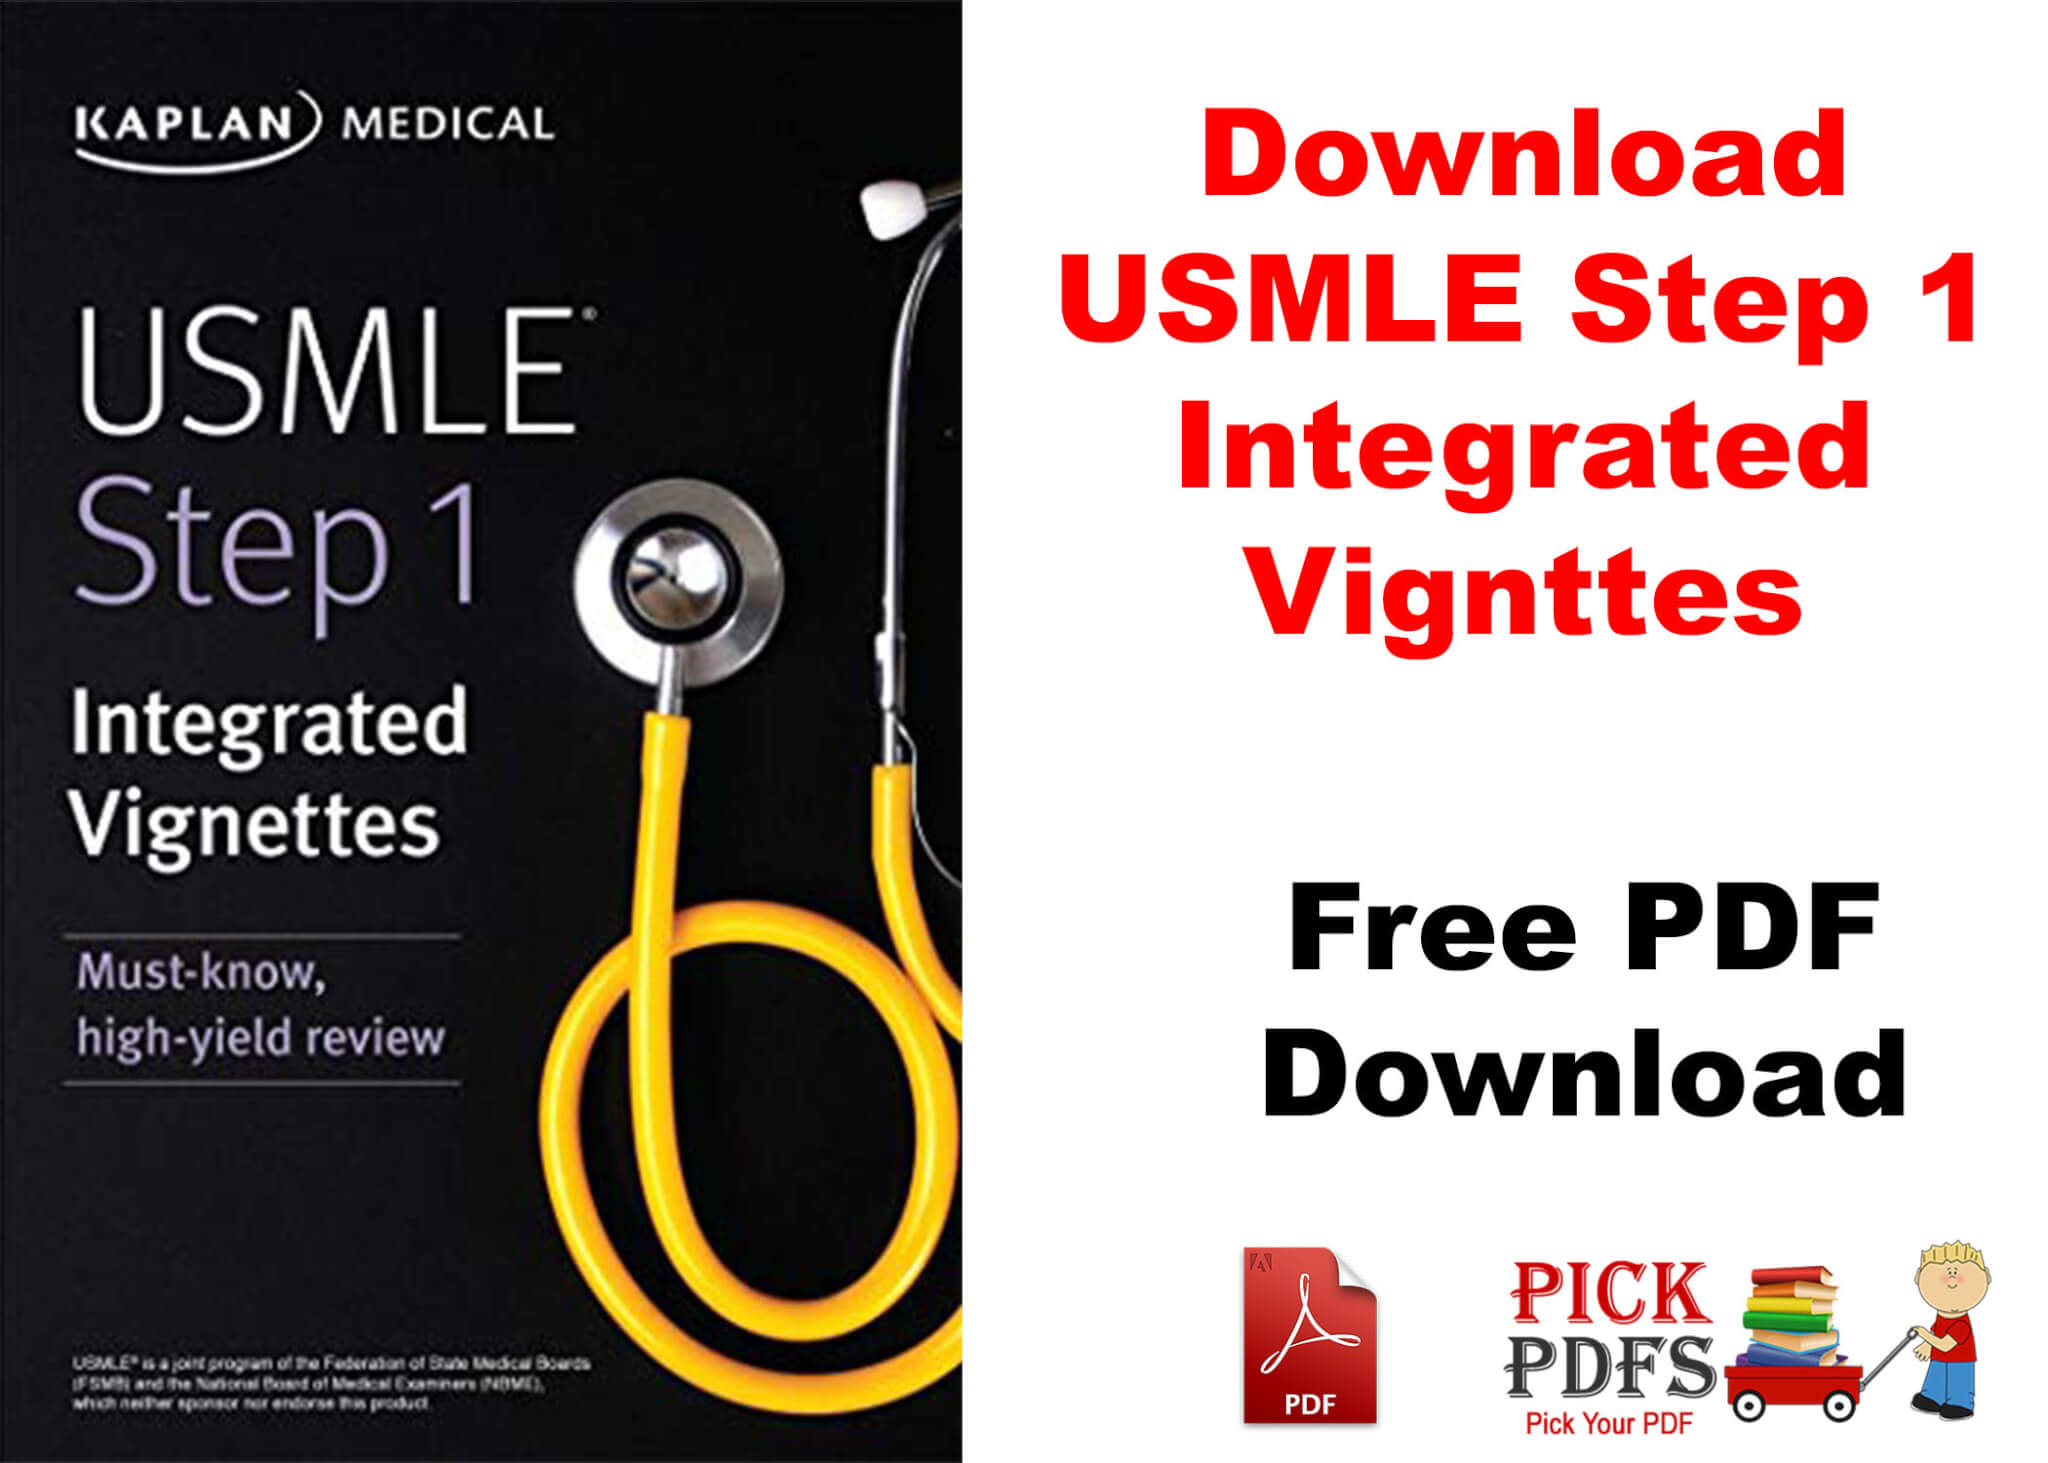 usmle step 1 integrated vignette pdf free download